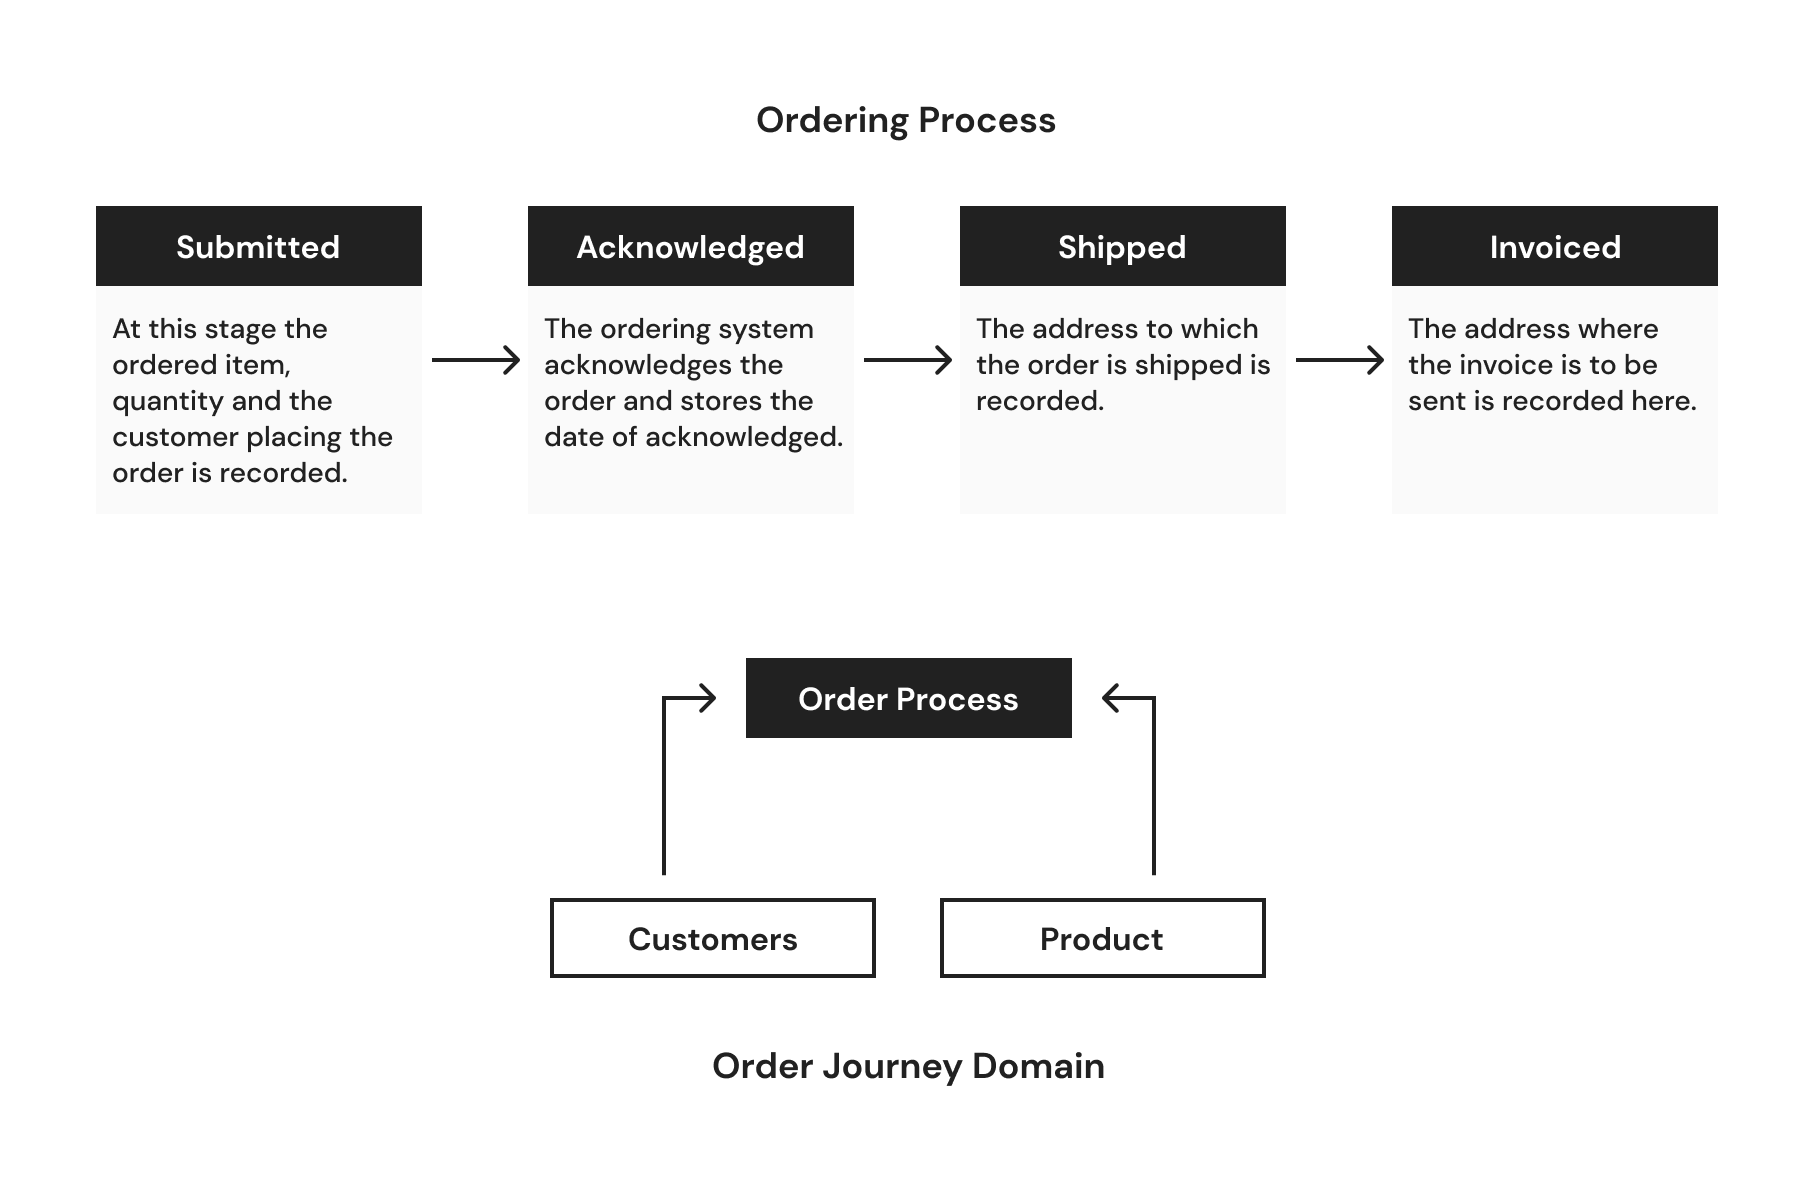 Understanding the Ordering Journey